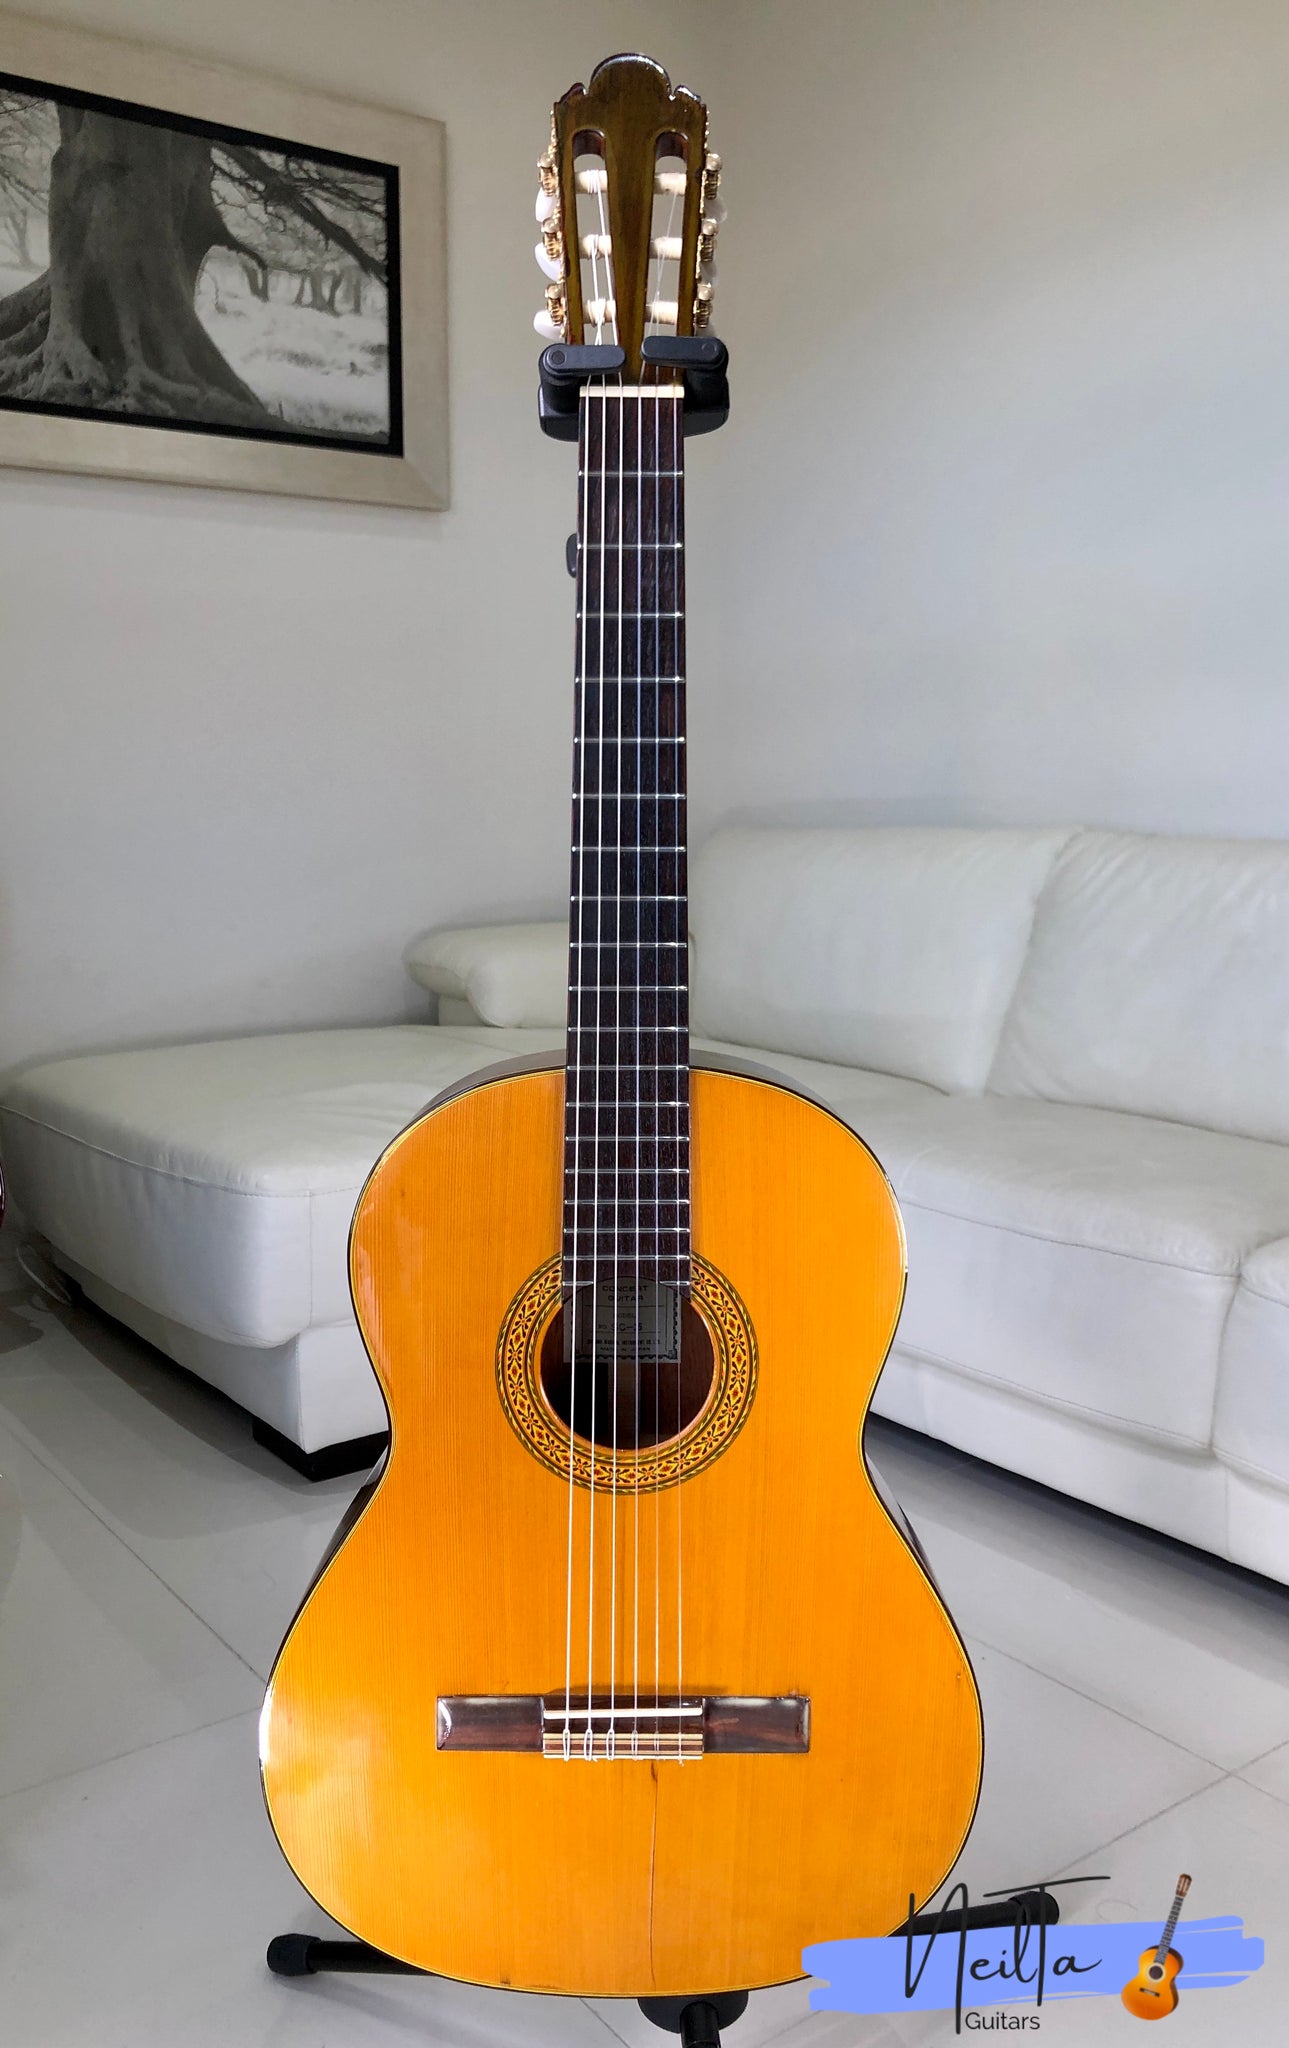 Shinano SC-25 Handmade Concert Classical Guitar – Neil Ta Music